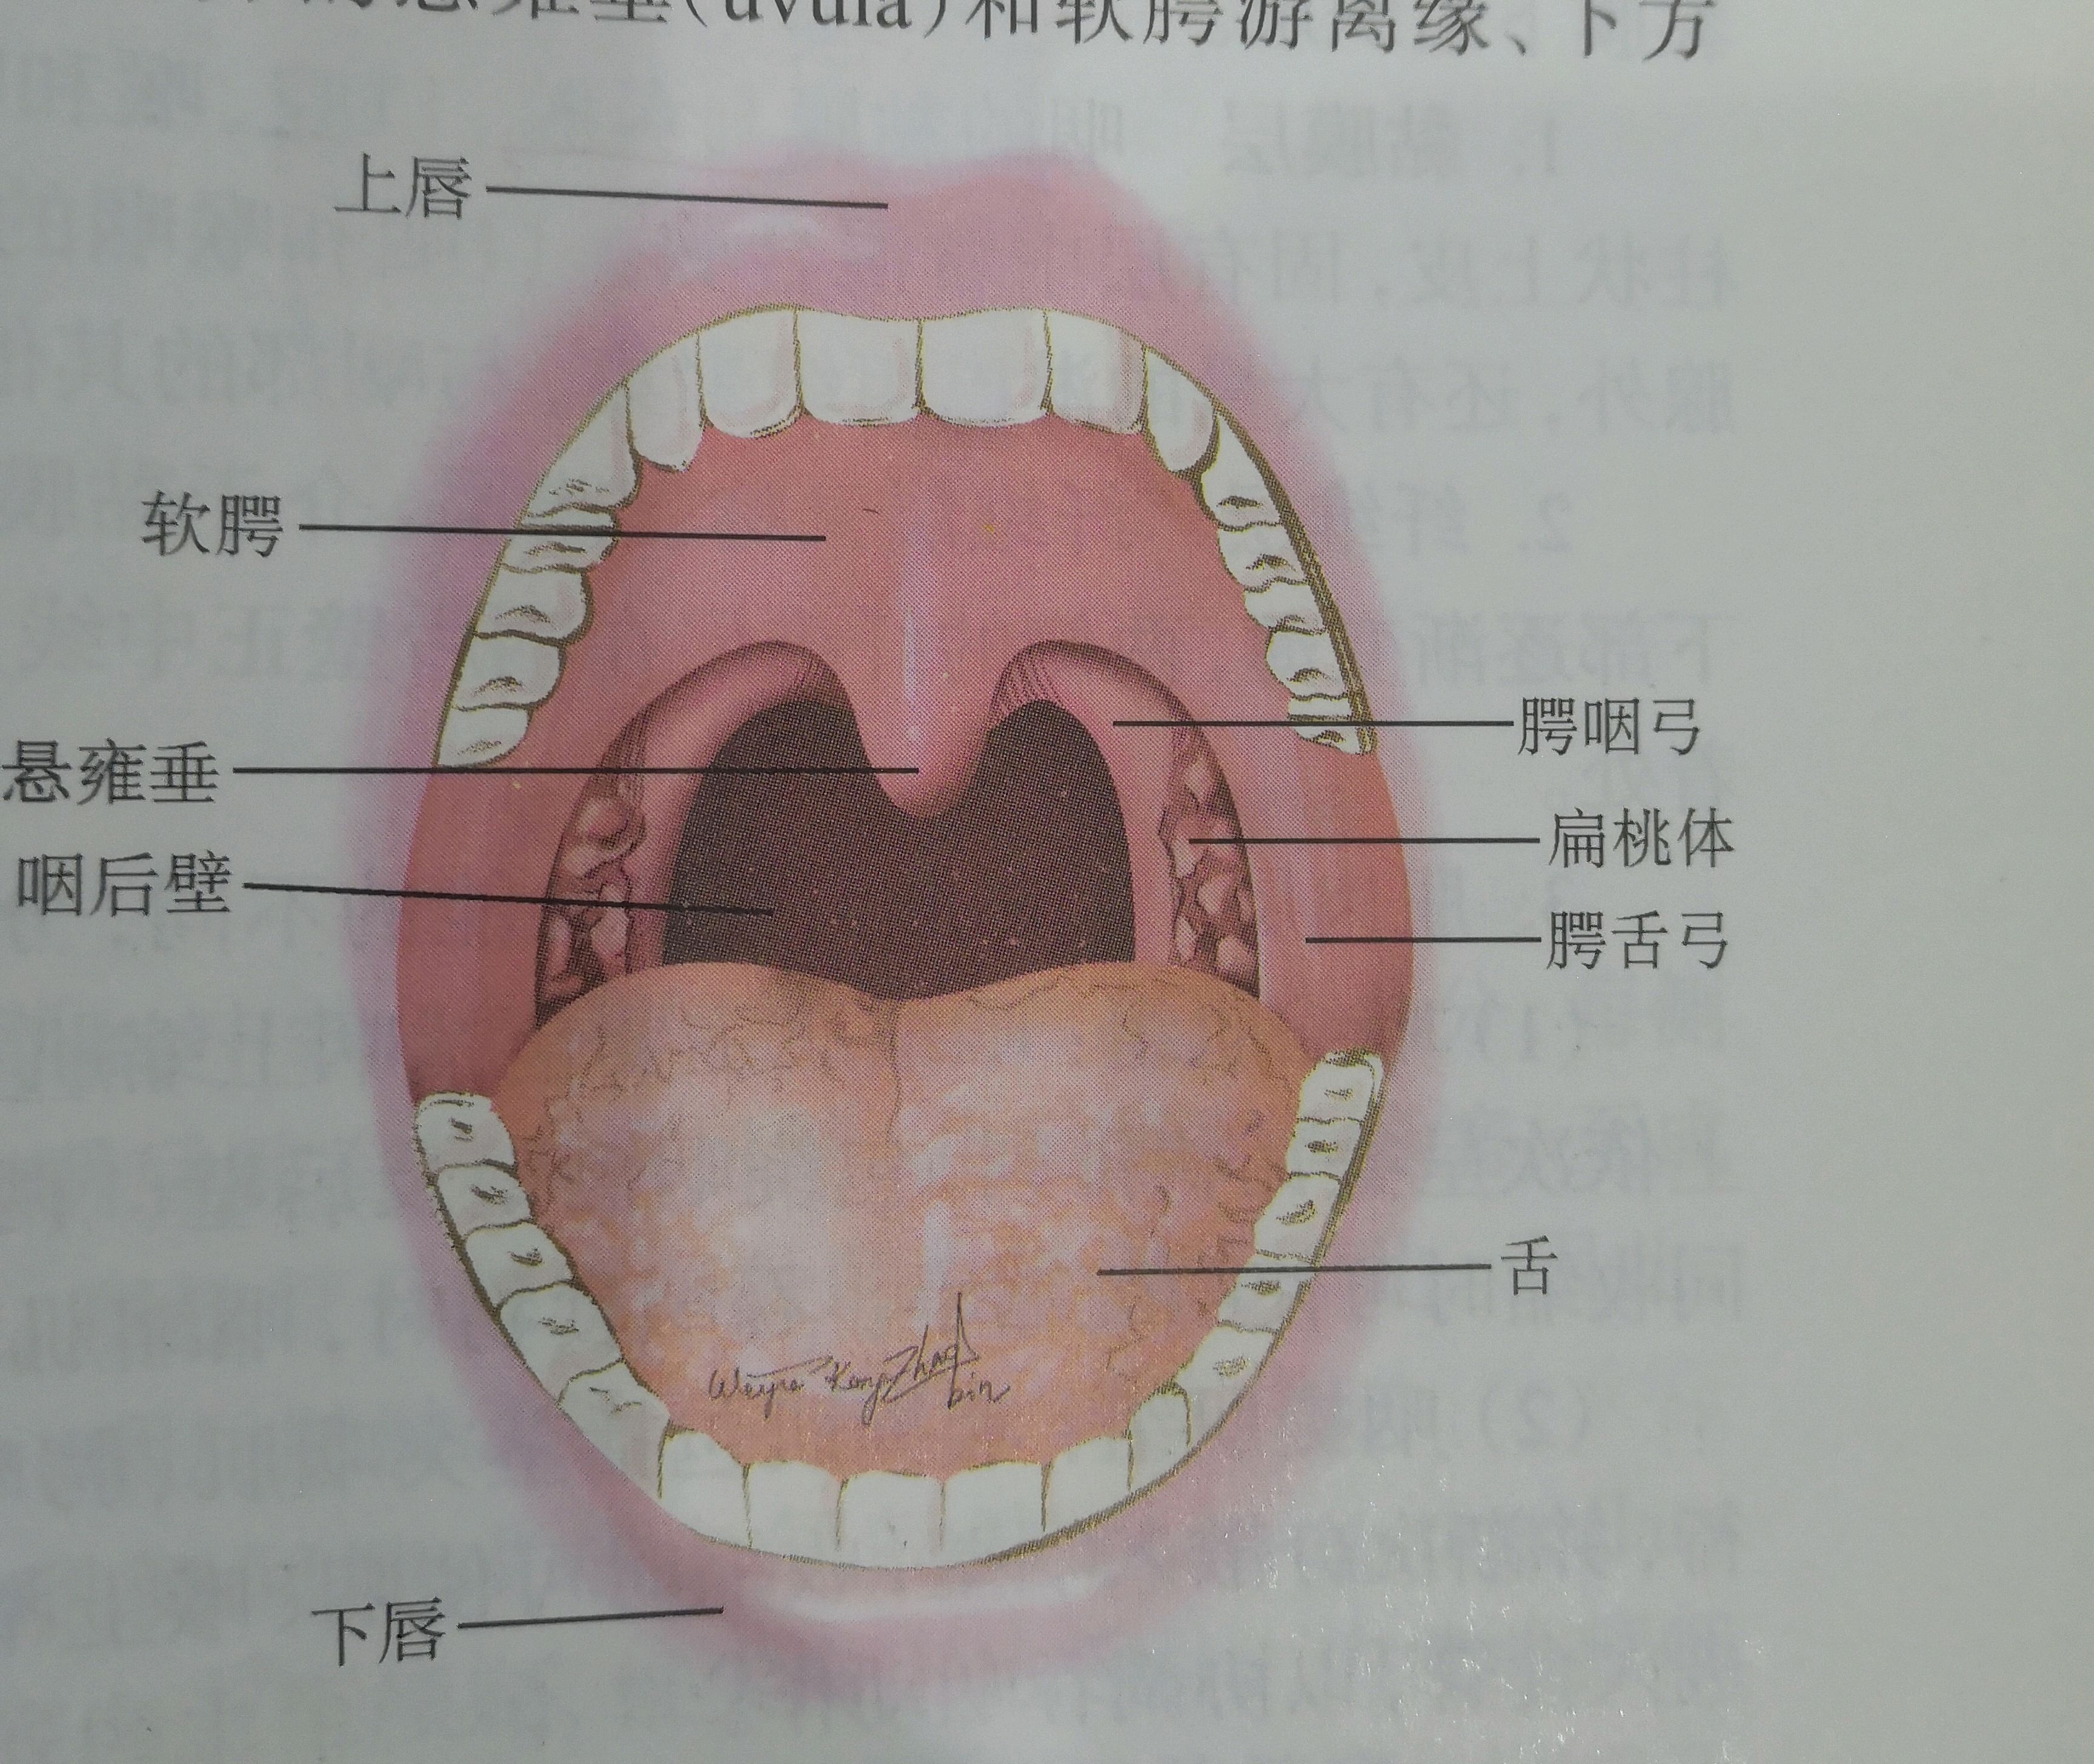 咽喉部结构图图片